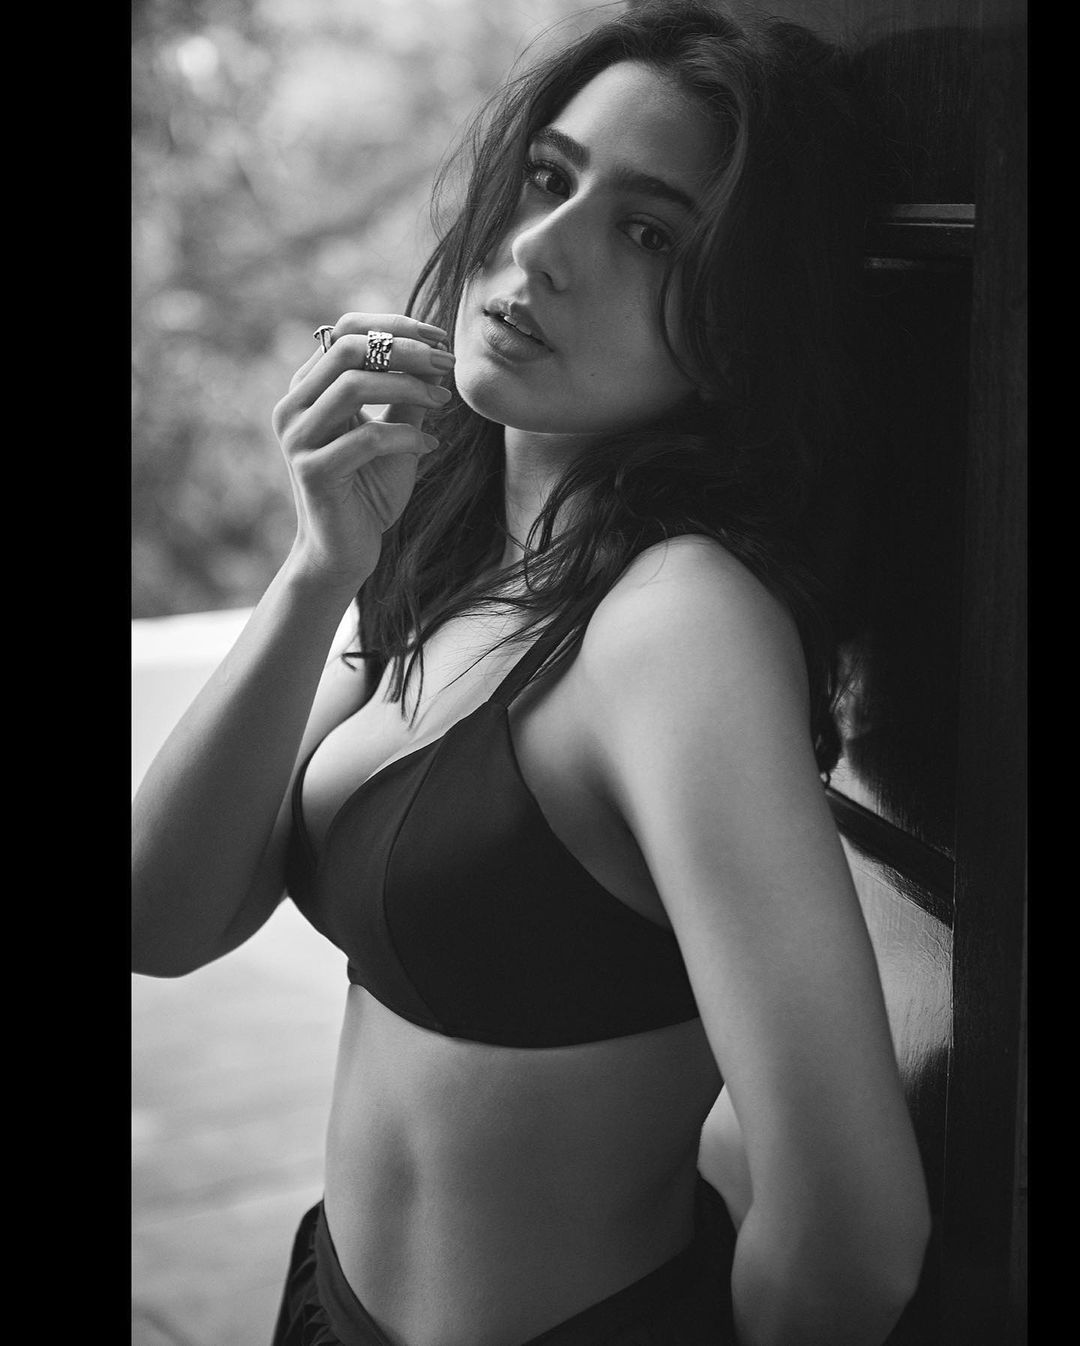 Sara Ali Khan Turns 26 A Look At 26 Hot And Sexy Photos Of The Actress News18 